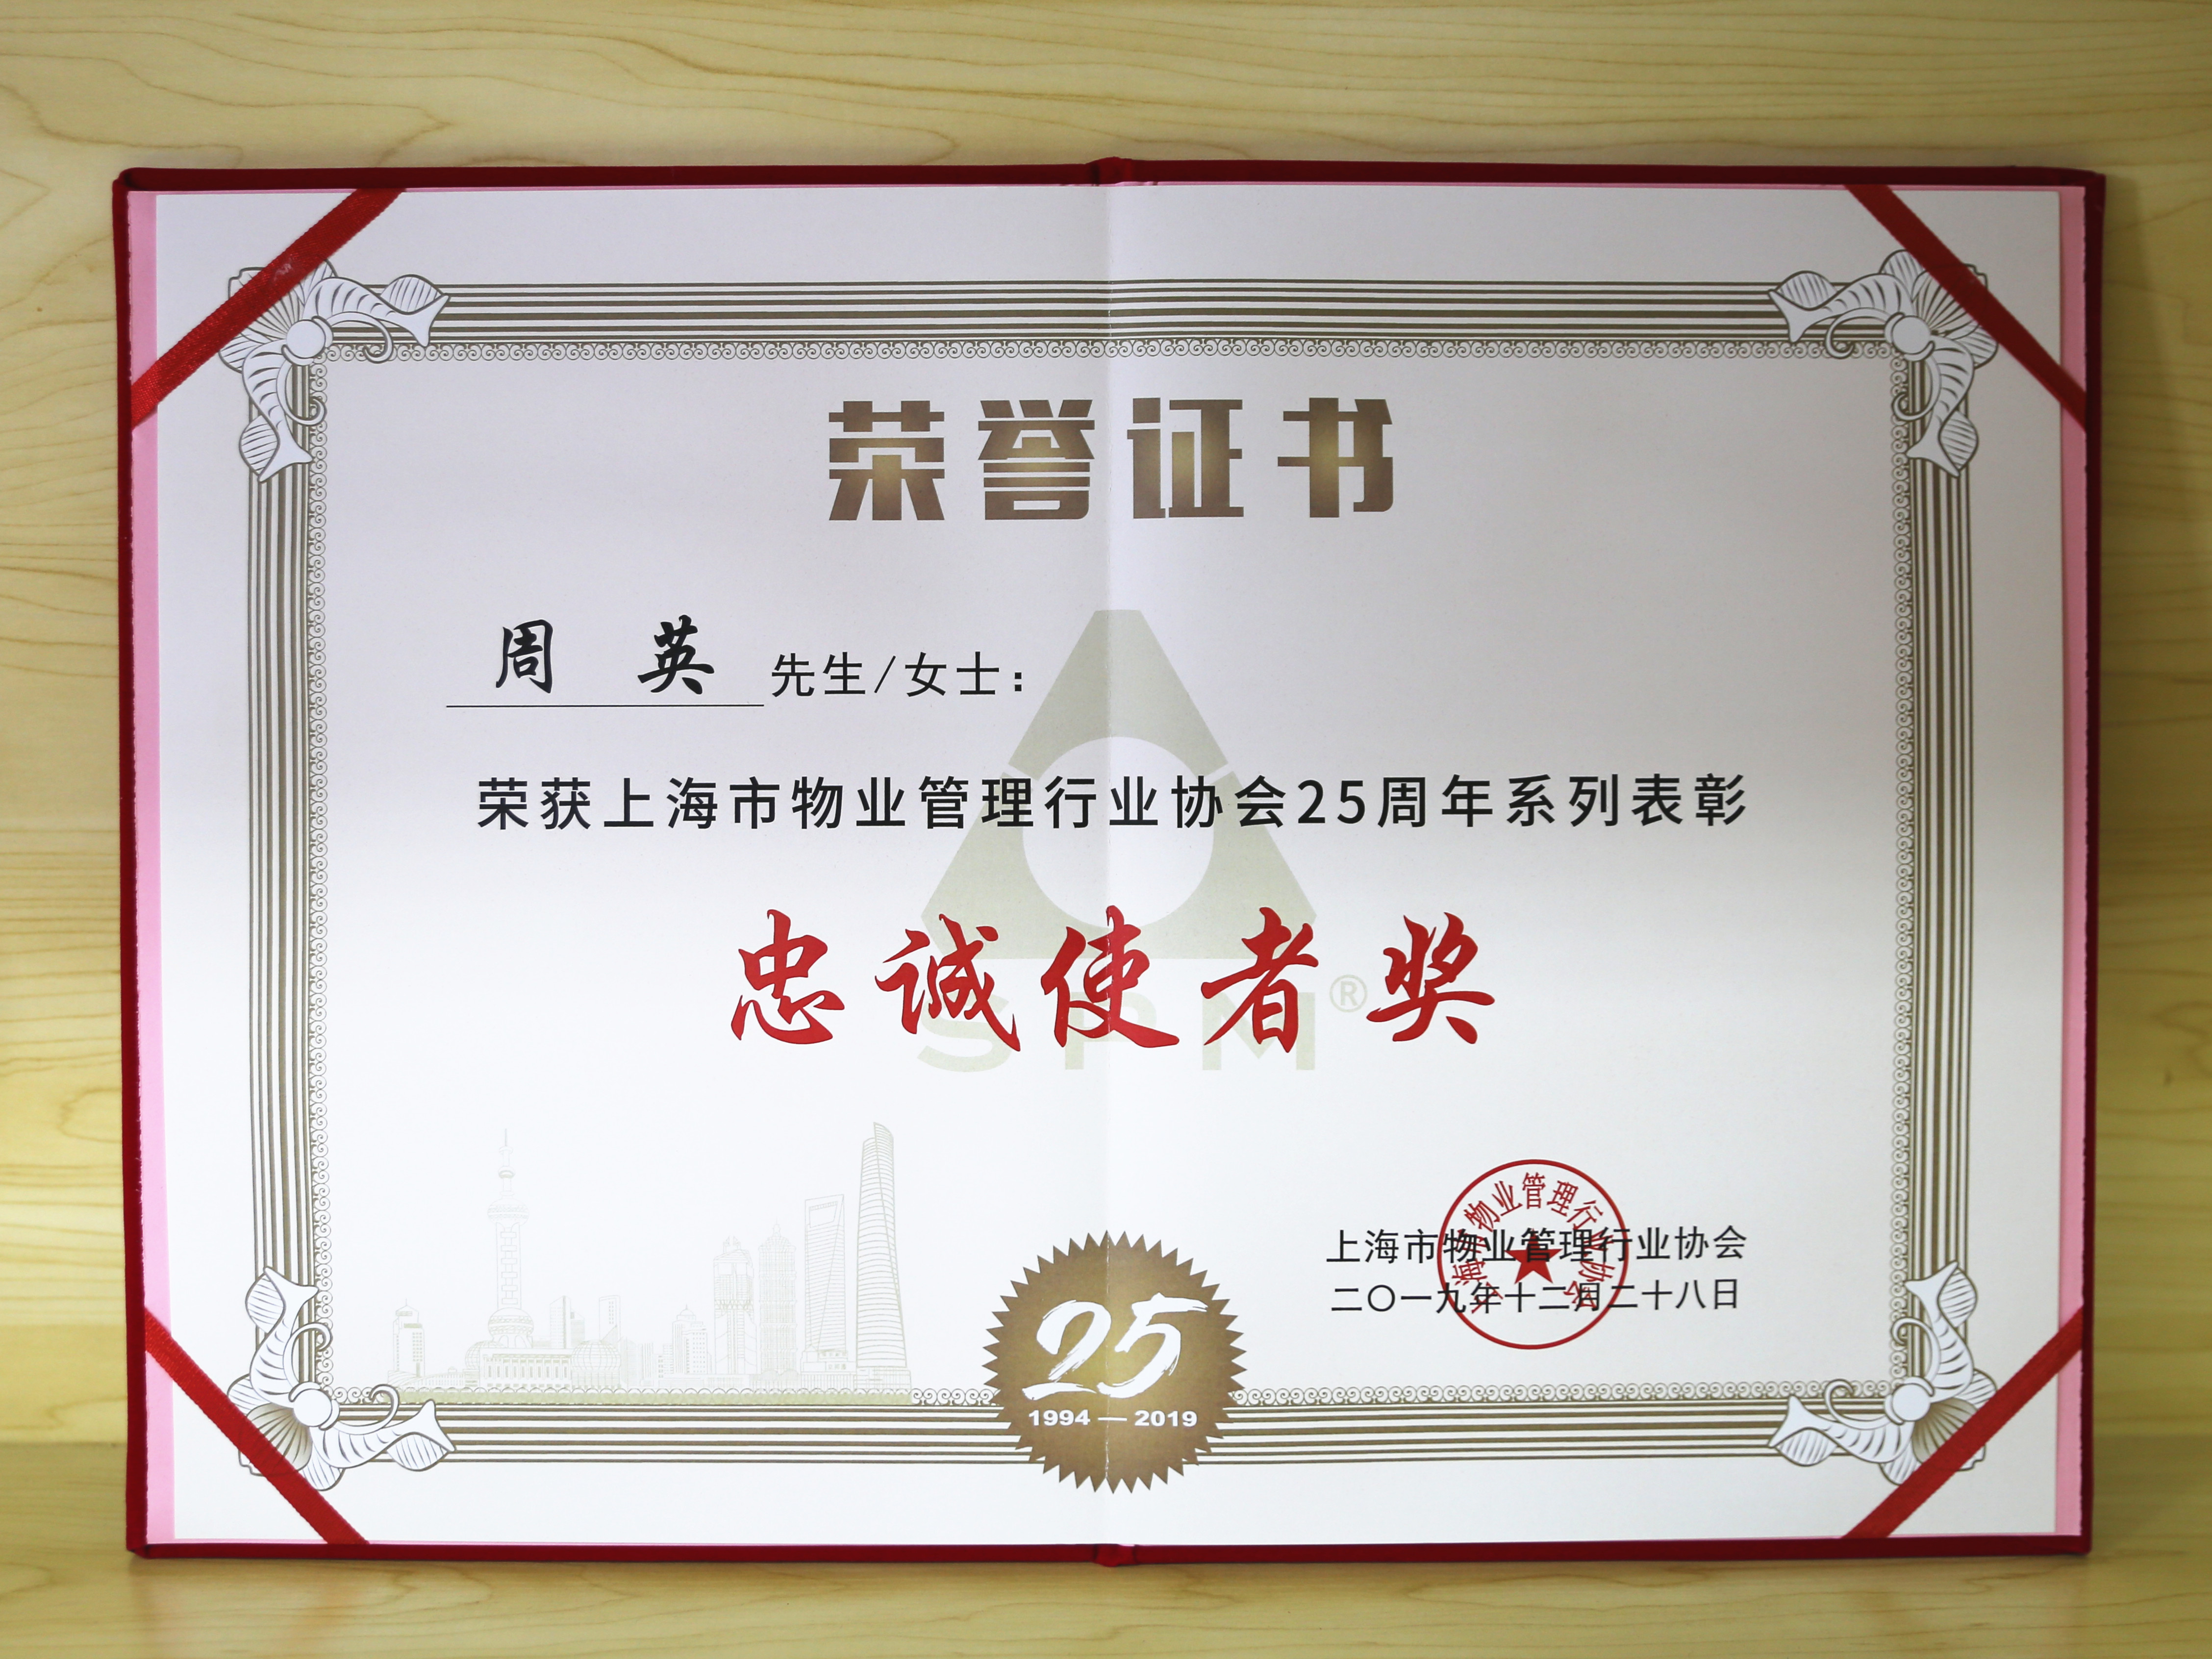 企福物业总经理周英荣获上海市物业管理行业协会25周年系列表彰“忠诚使者奖”